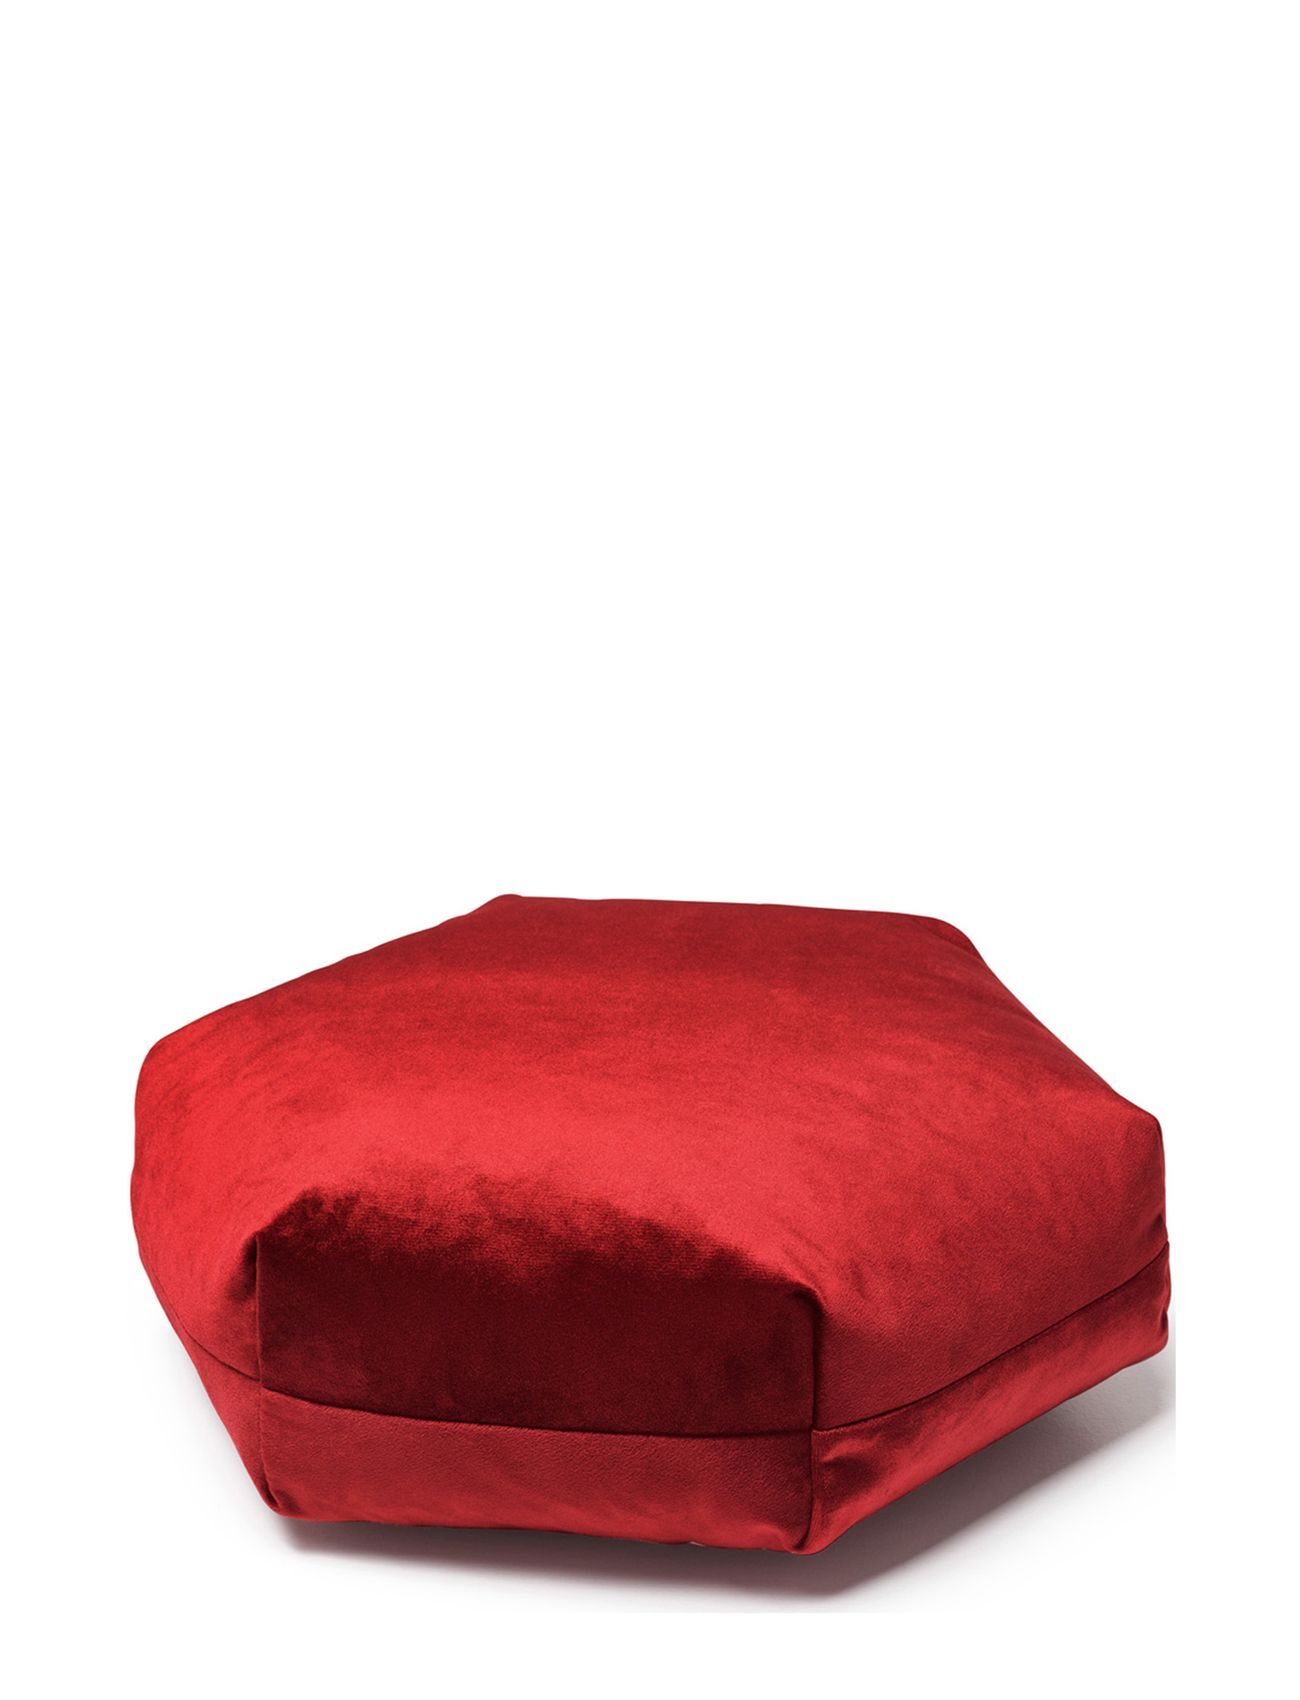 Puik Design Plushexagon Home Textiles Cushions & Blankets Cushions Rød Puik Design